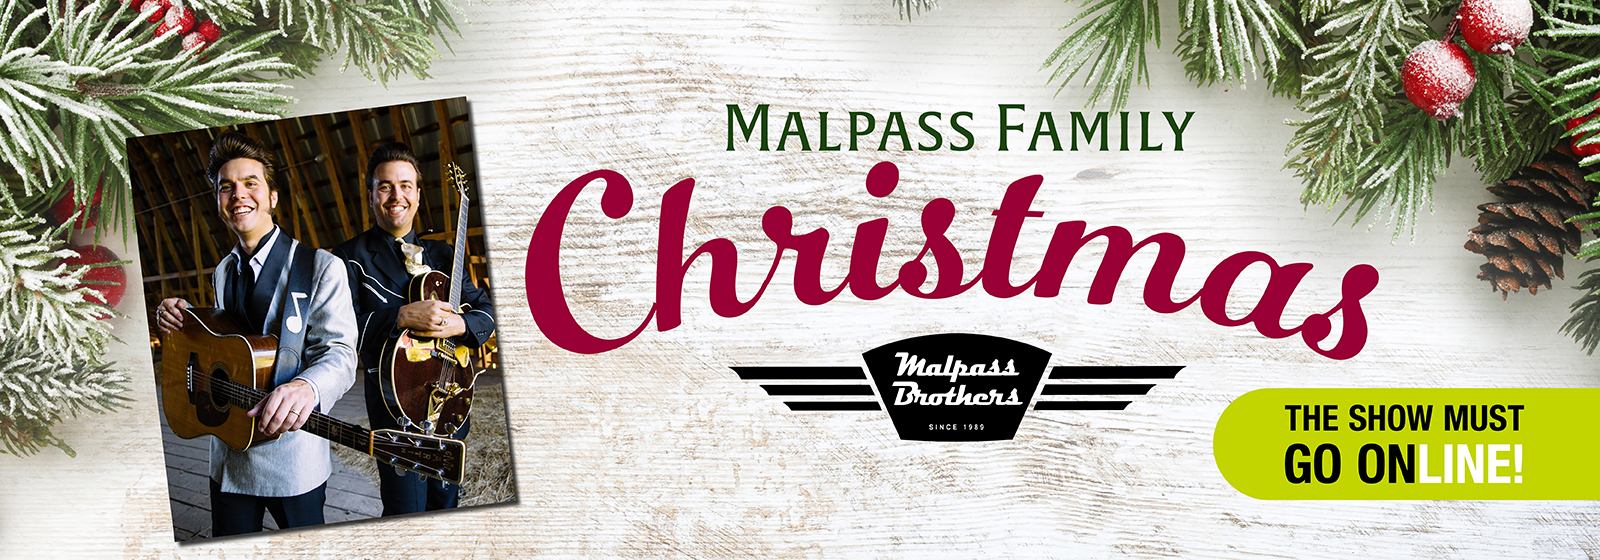 The Malpass Family Christmas